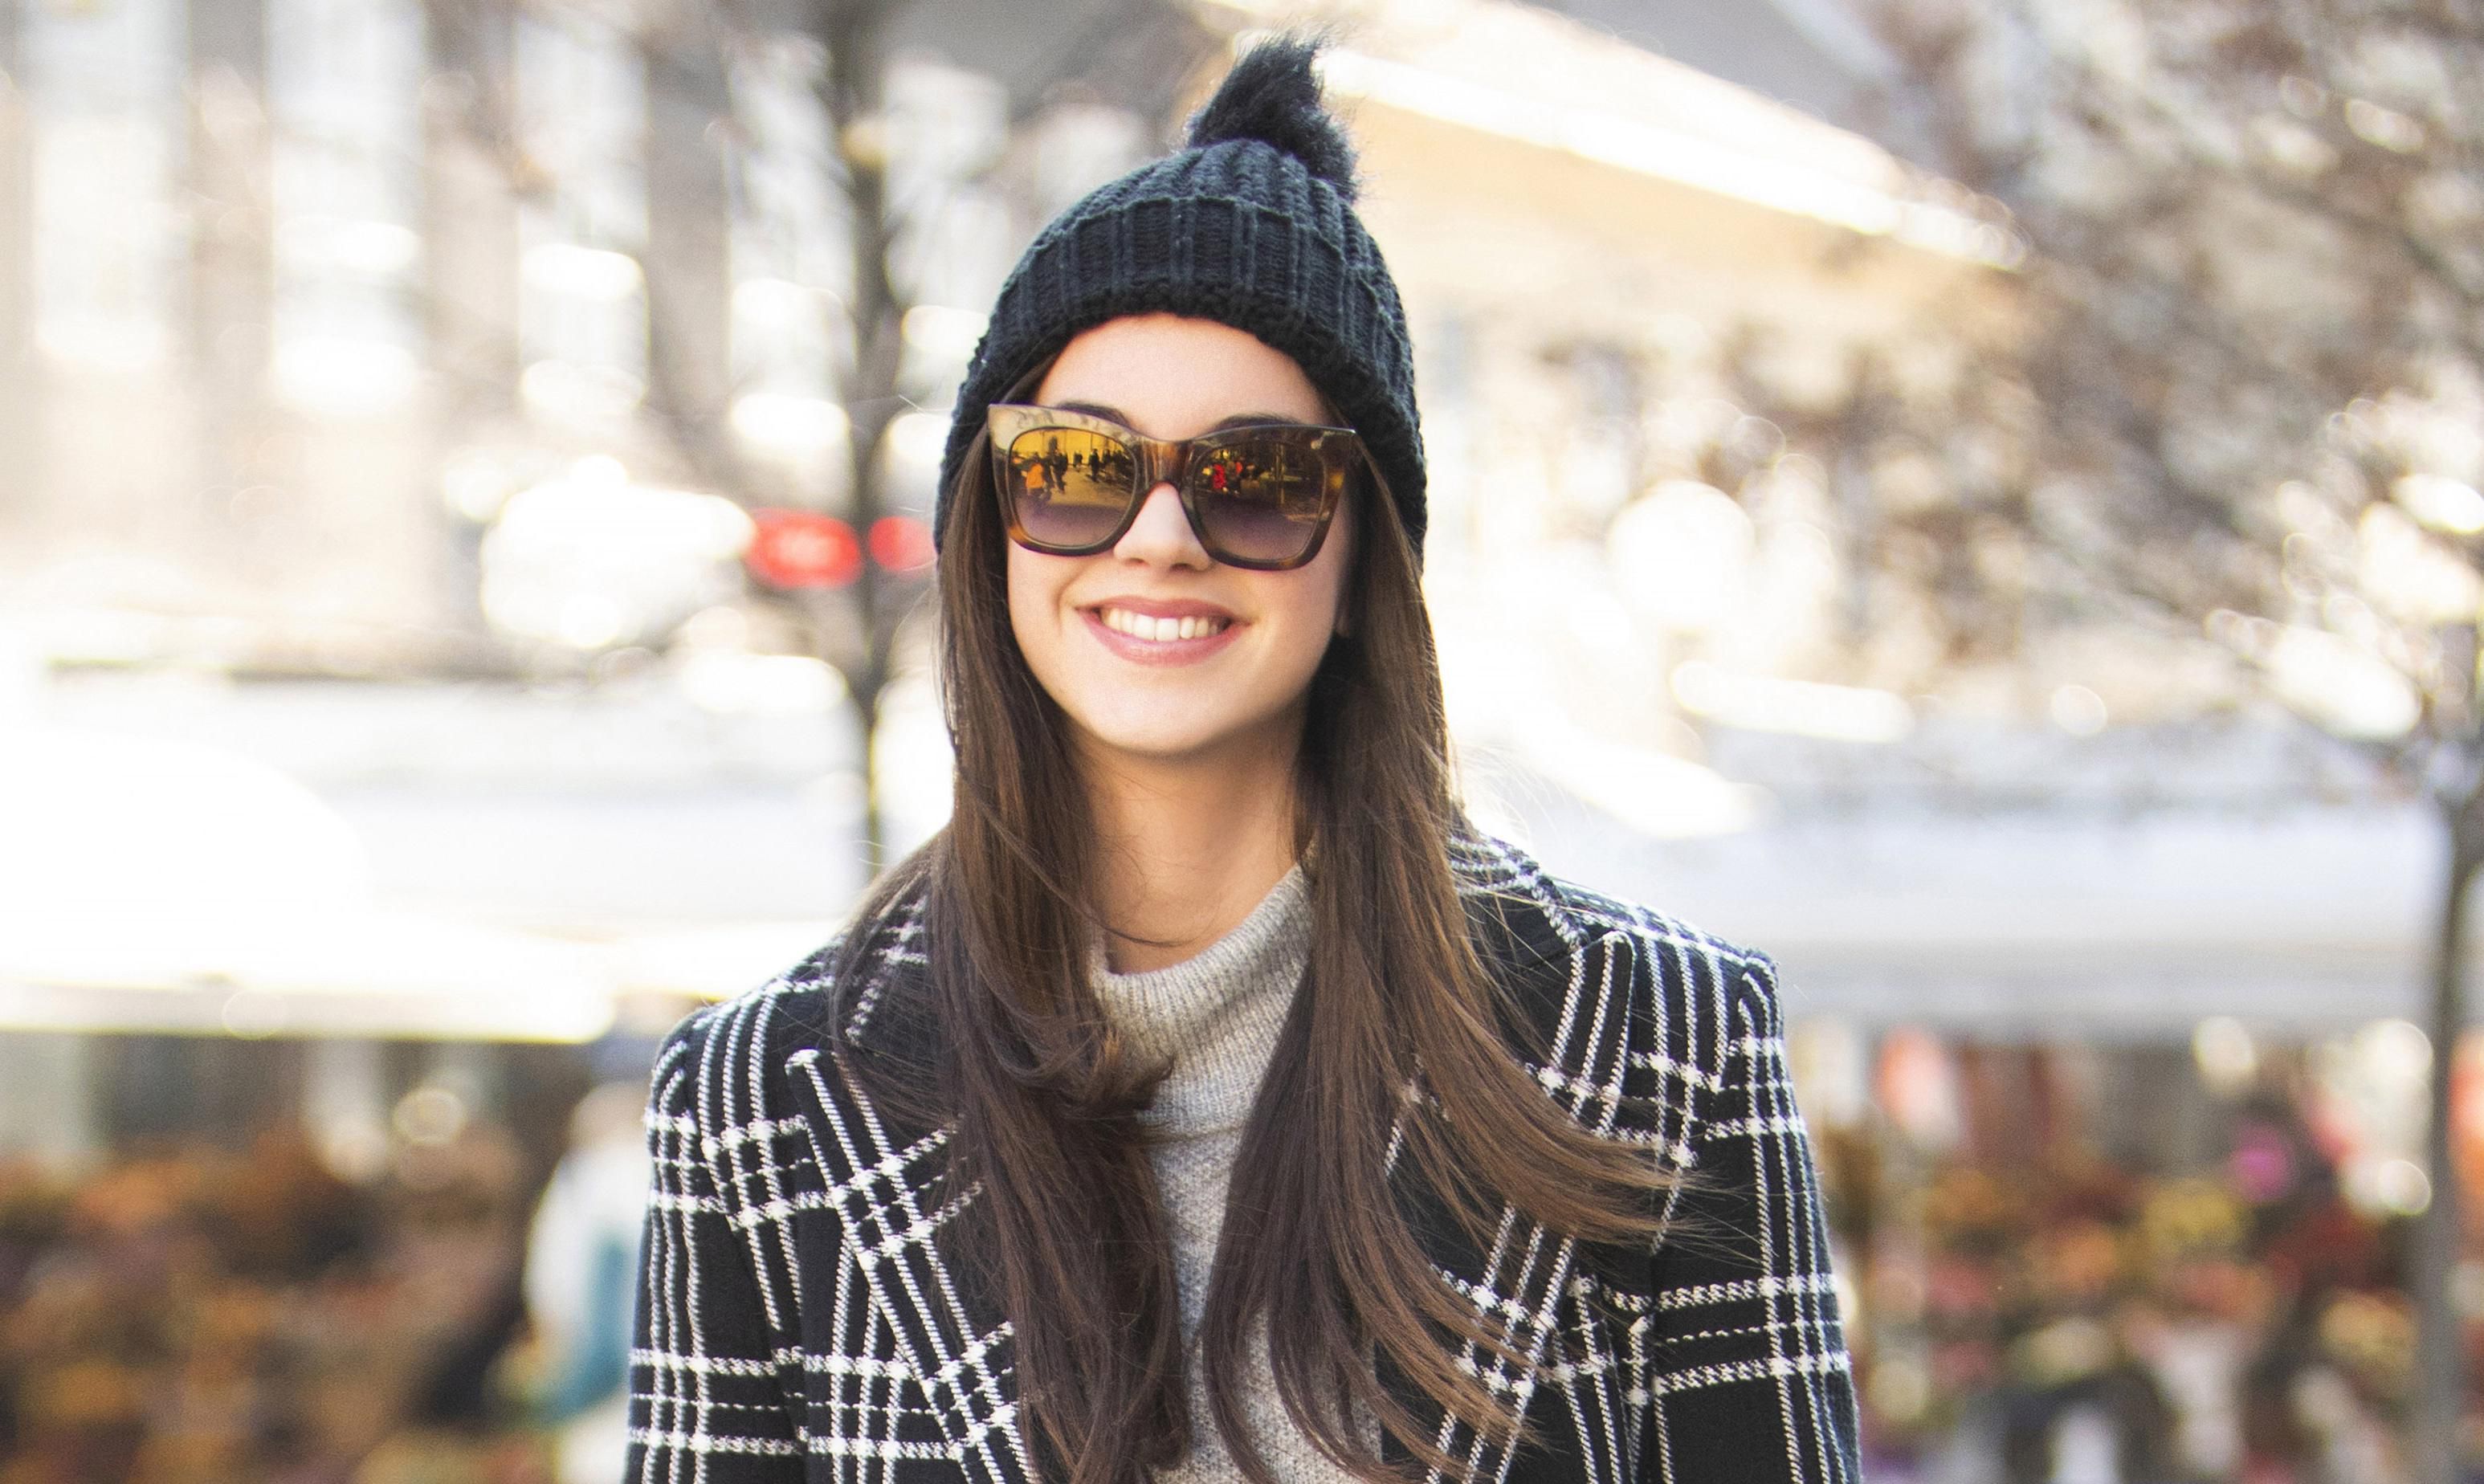 Studentica divnog osmijeha nosi čizme koje su već sezonama najpopularnije među trendsetericama